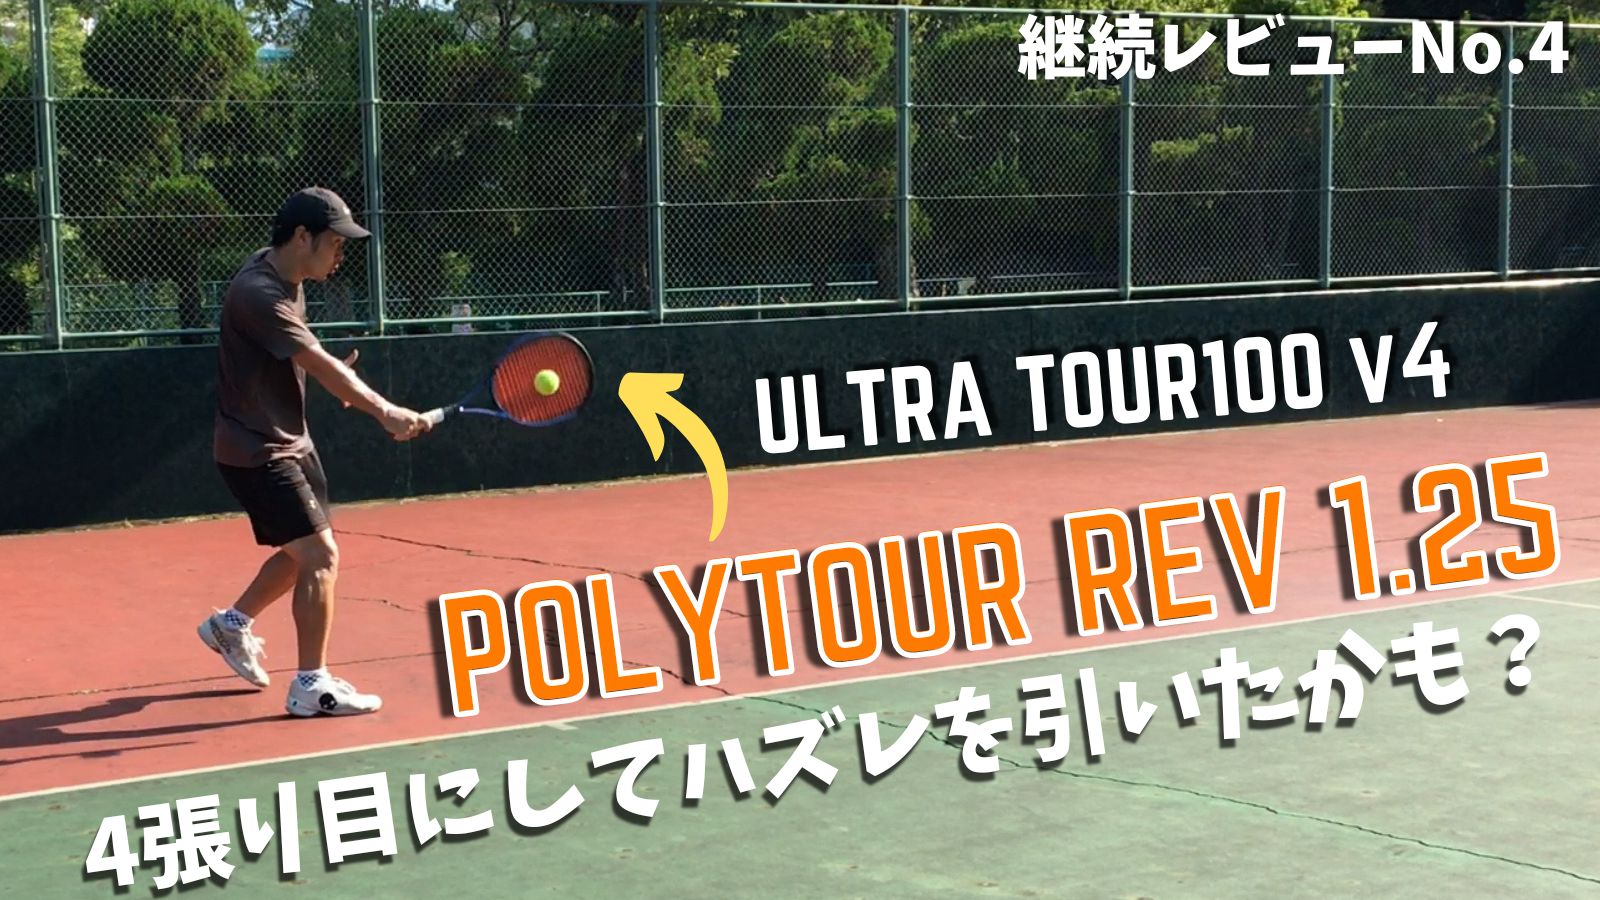 継続レビュー#4】ポリツアーレブ1.25mmがハズレだった件。ULTRA TOUR100v4 / POLY TOUR REV｜アドブロ/テニス